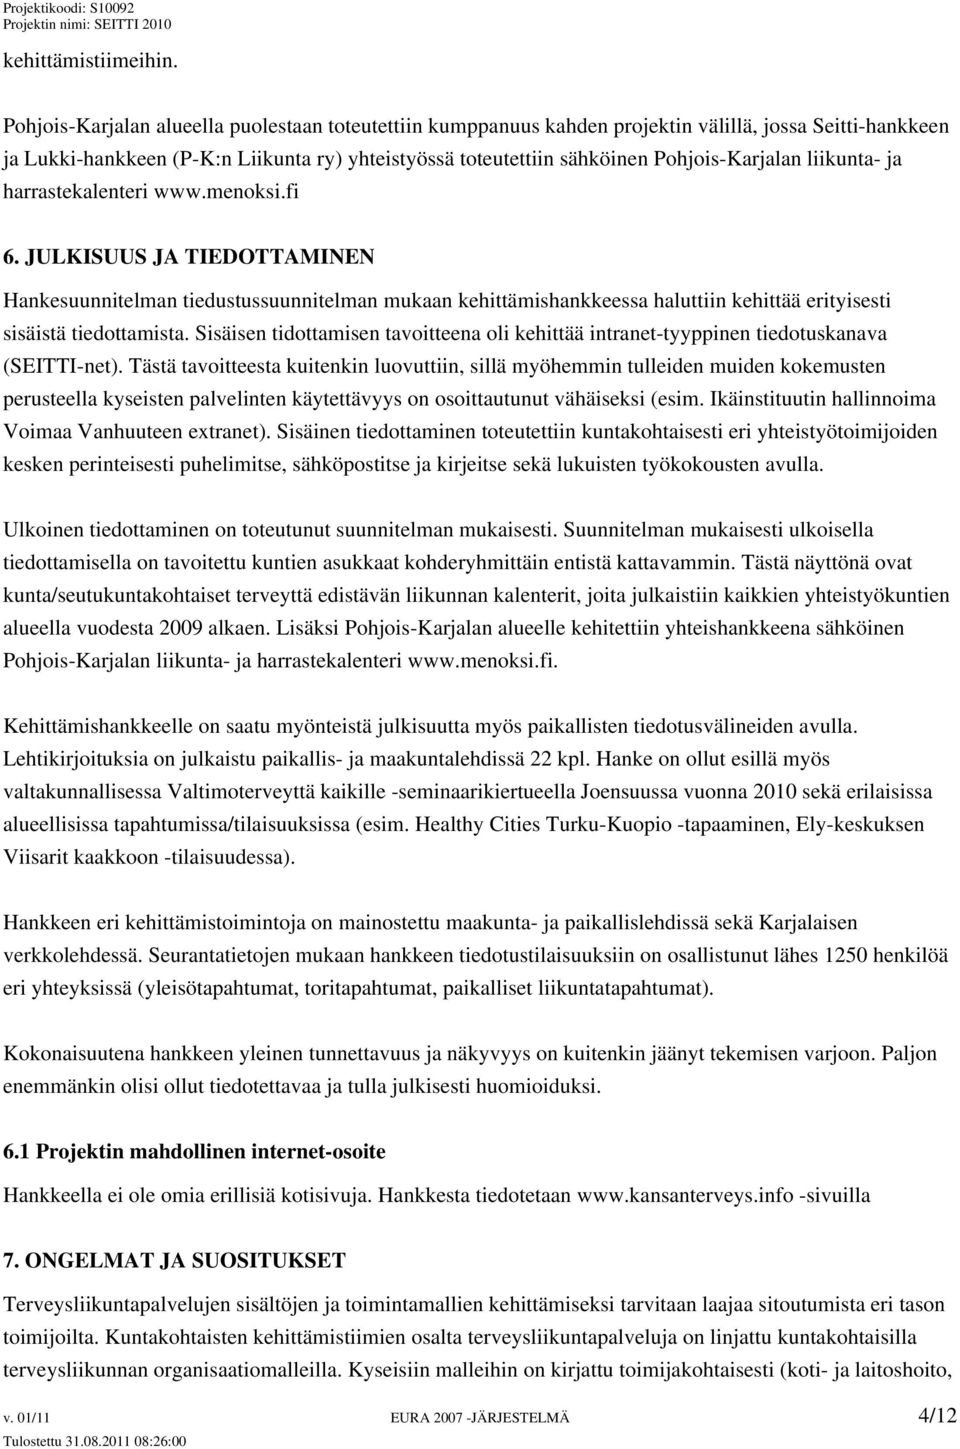 liikunta- ja harrastekalenteri www.menoksi.fi 6. JULKISUUS JA TIEDOTTAMINEN Hankesuunnitelman tiedustussuunnitelman mukaan kehittämishankkeessa haluttiin kehittää erityisesti sisäistä tiedottamista.